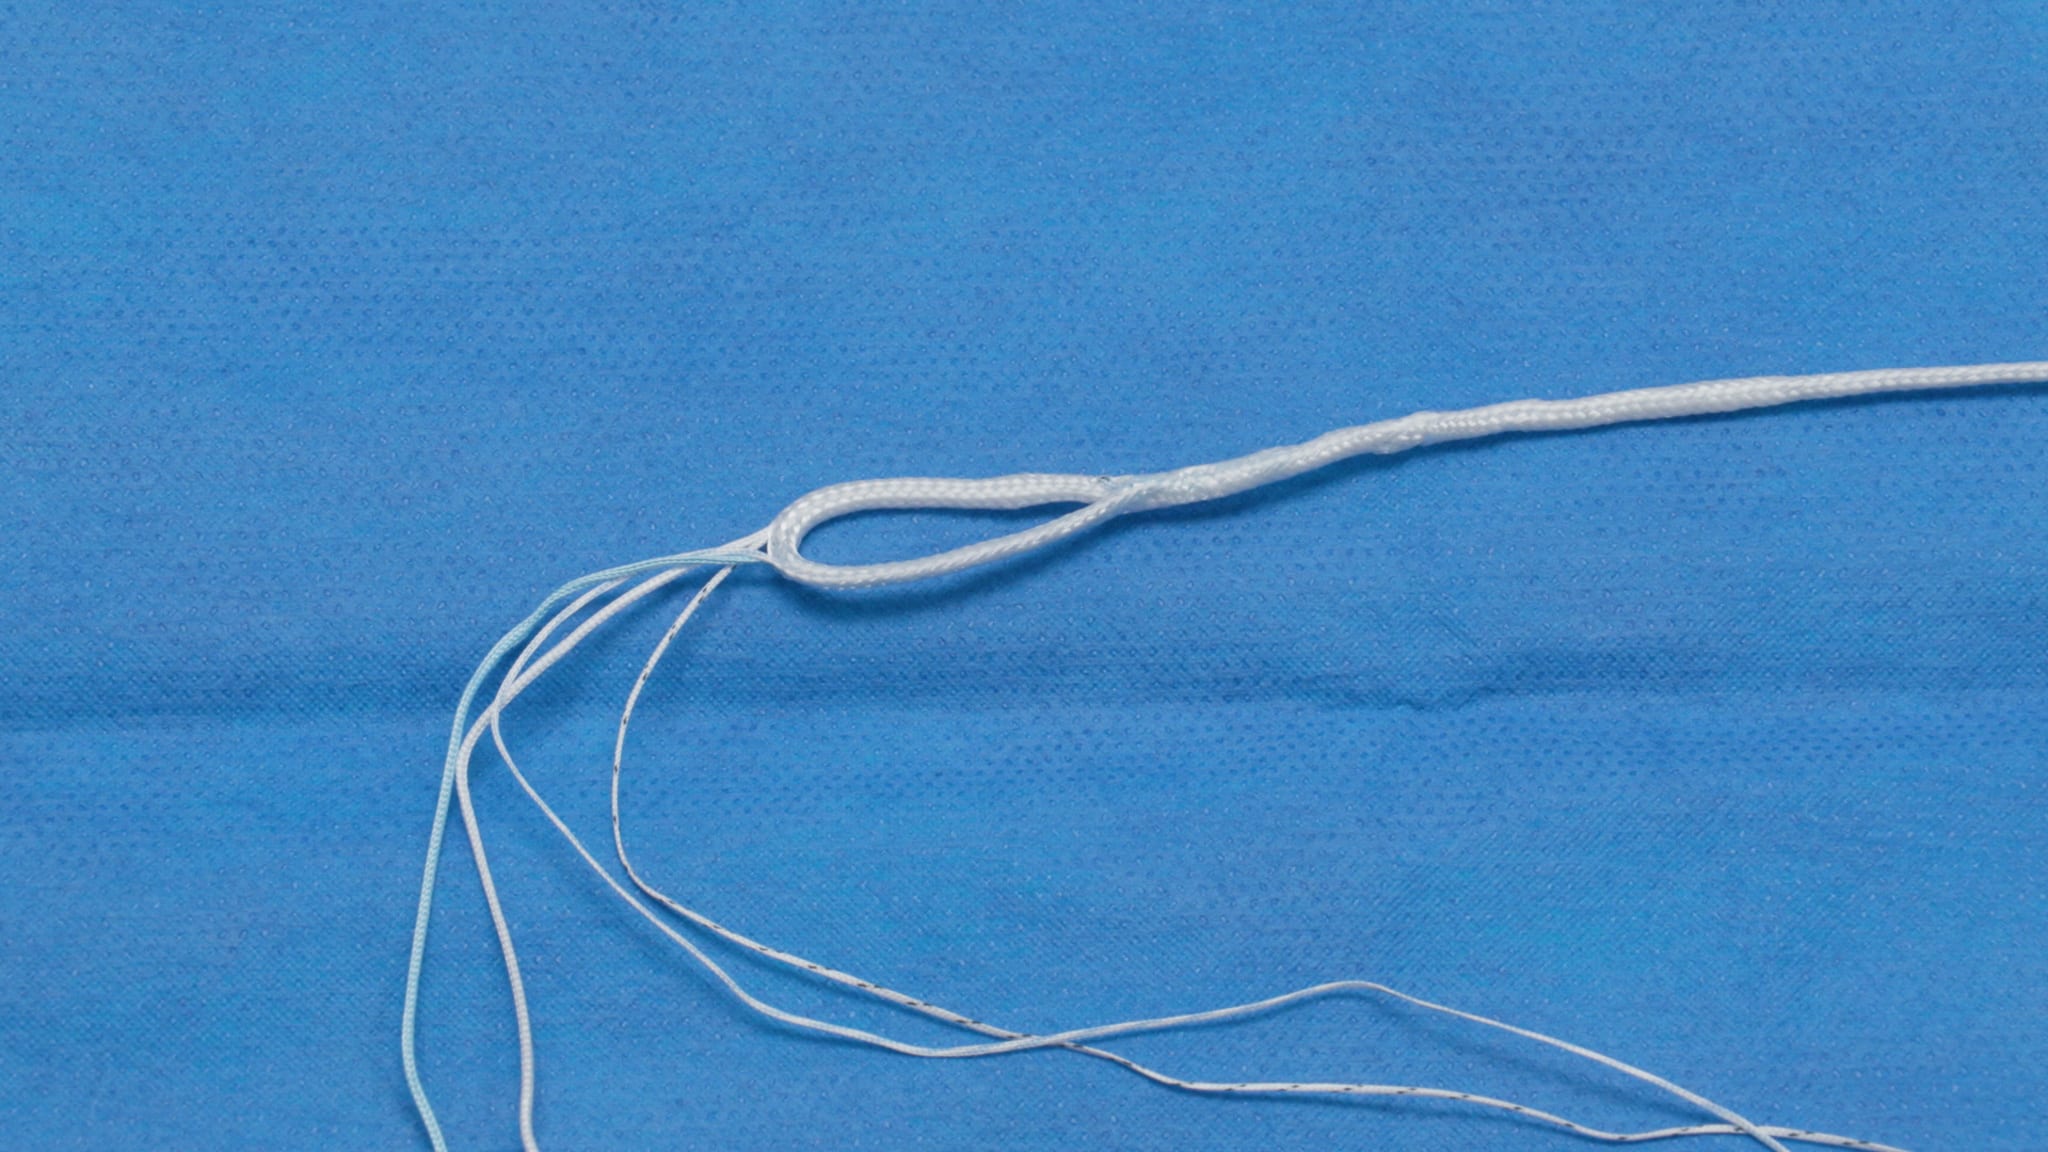 Meniscal Root Repair Using the SutureLoc™ Implant